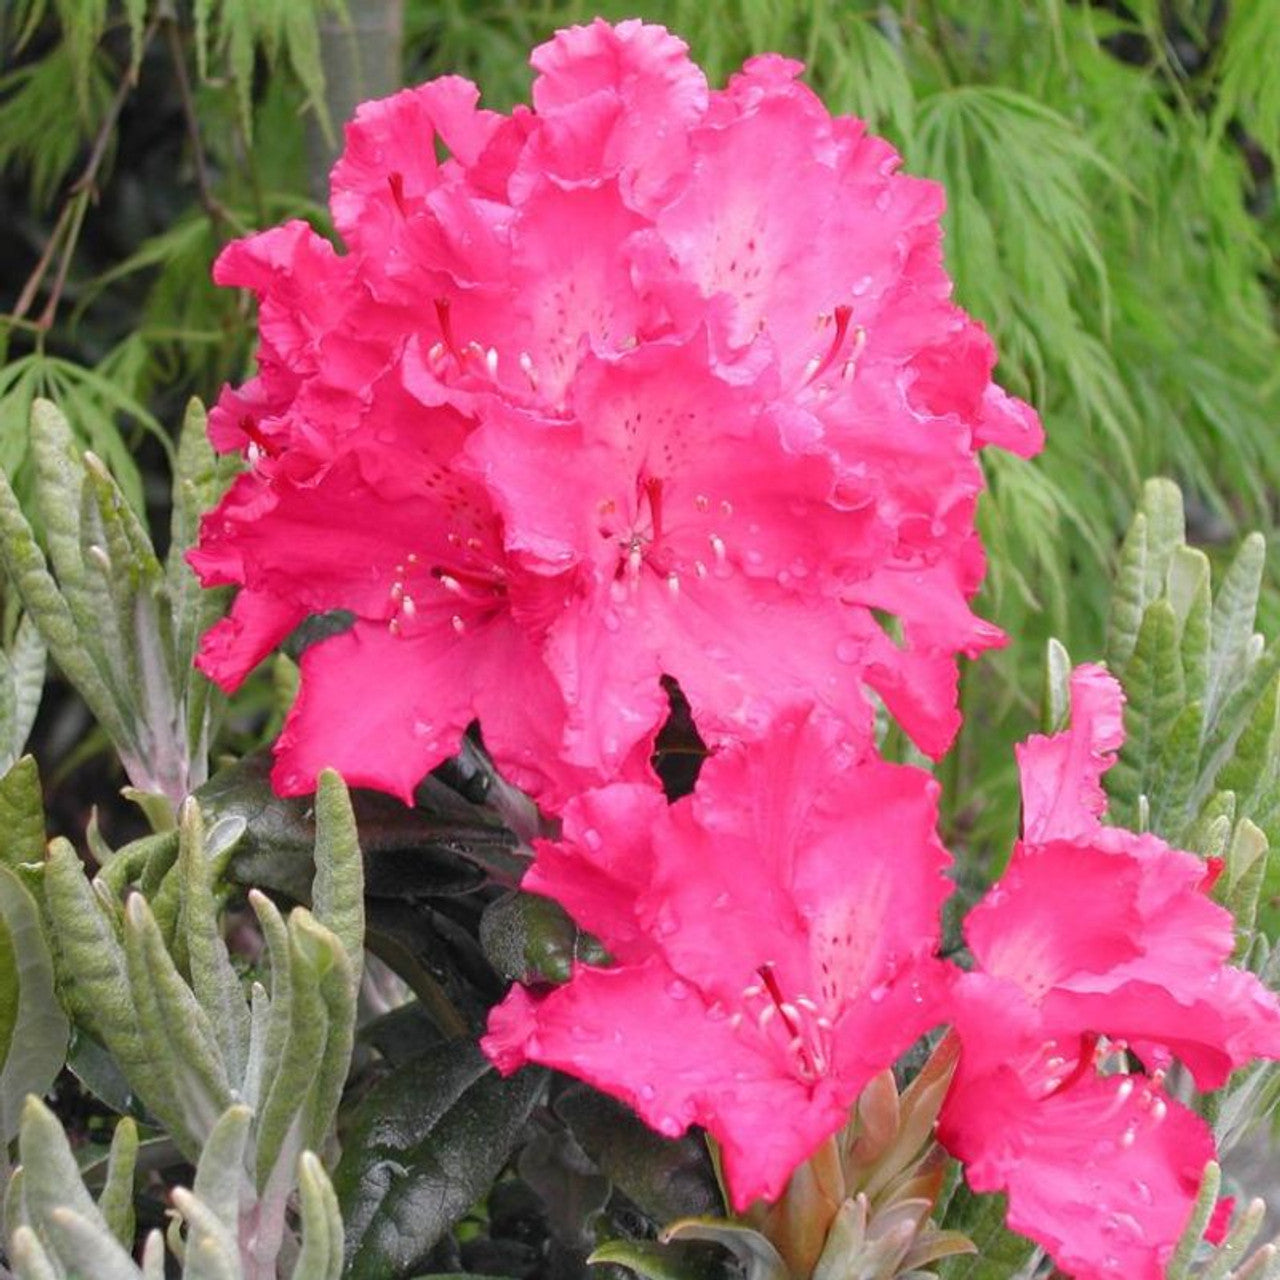 'HAAGA' Rhododendron (Rhododendron x 'haaga')